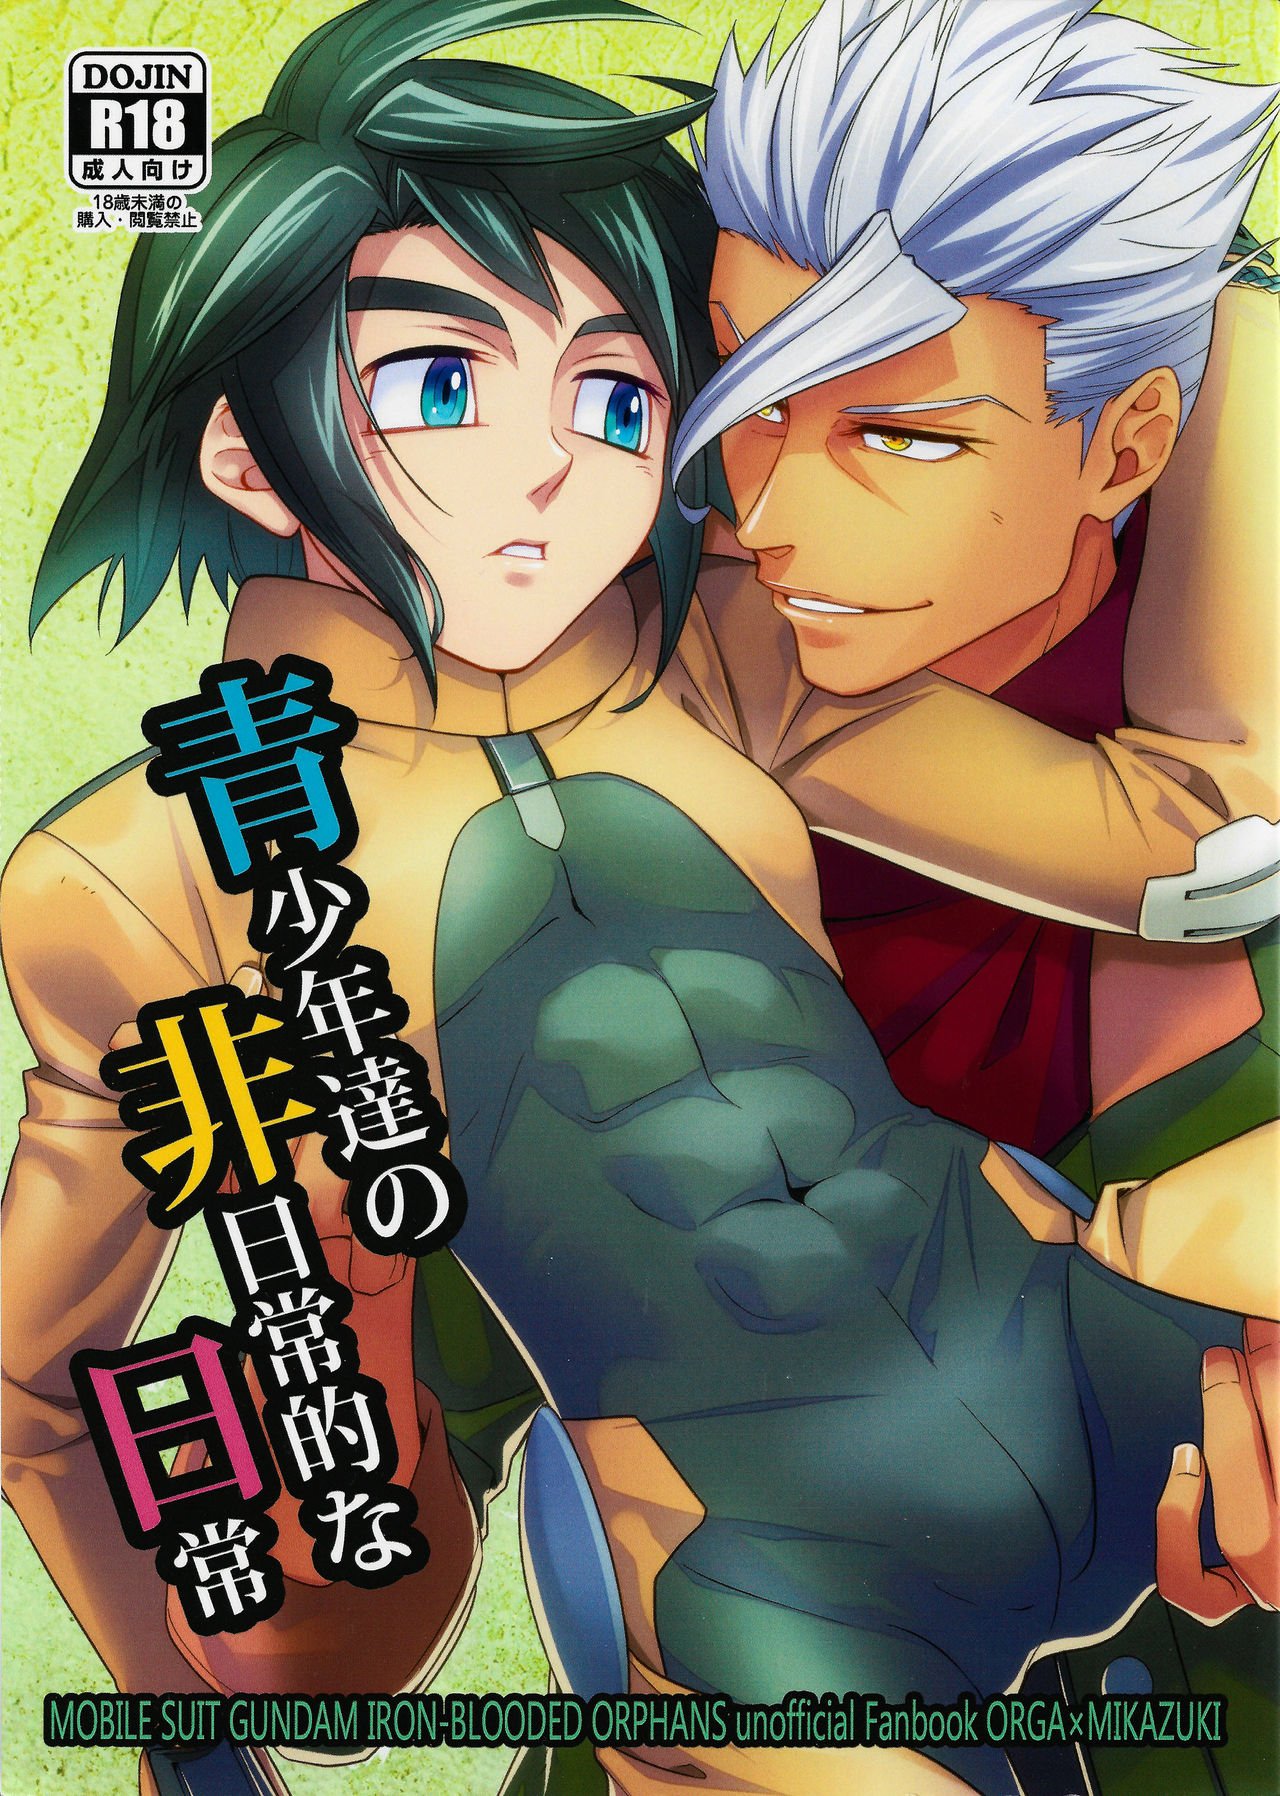 anime porn gay manga